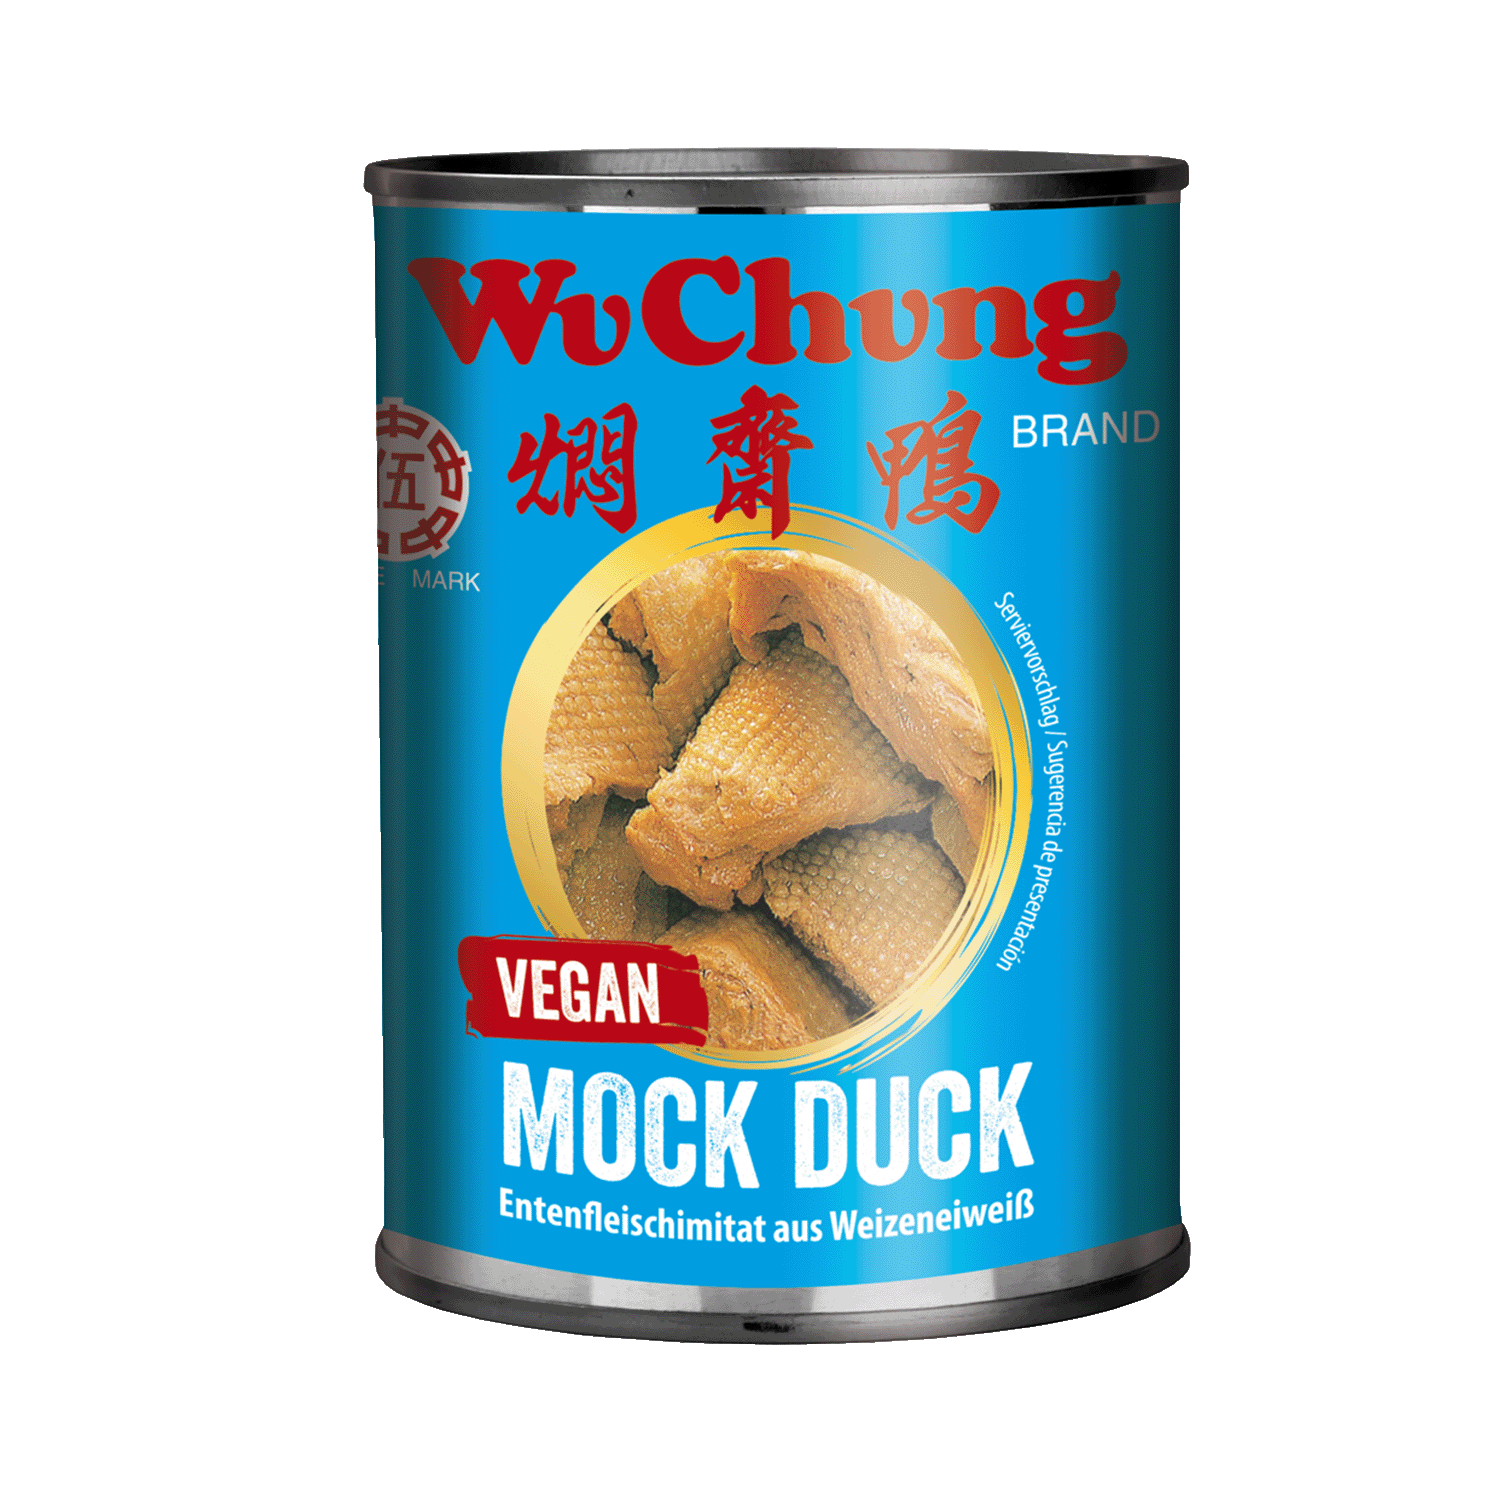 Vegane Mock Duck, 280g